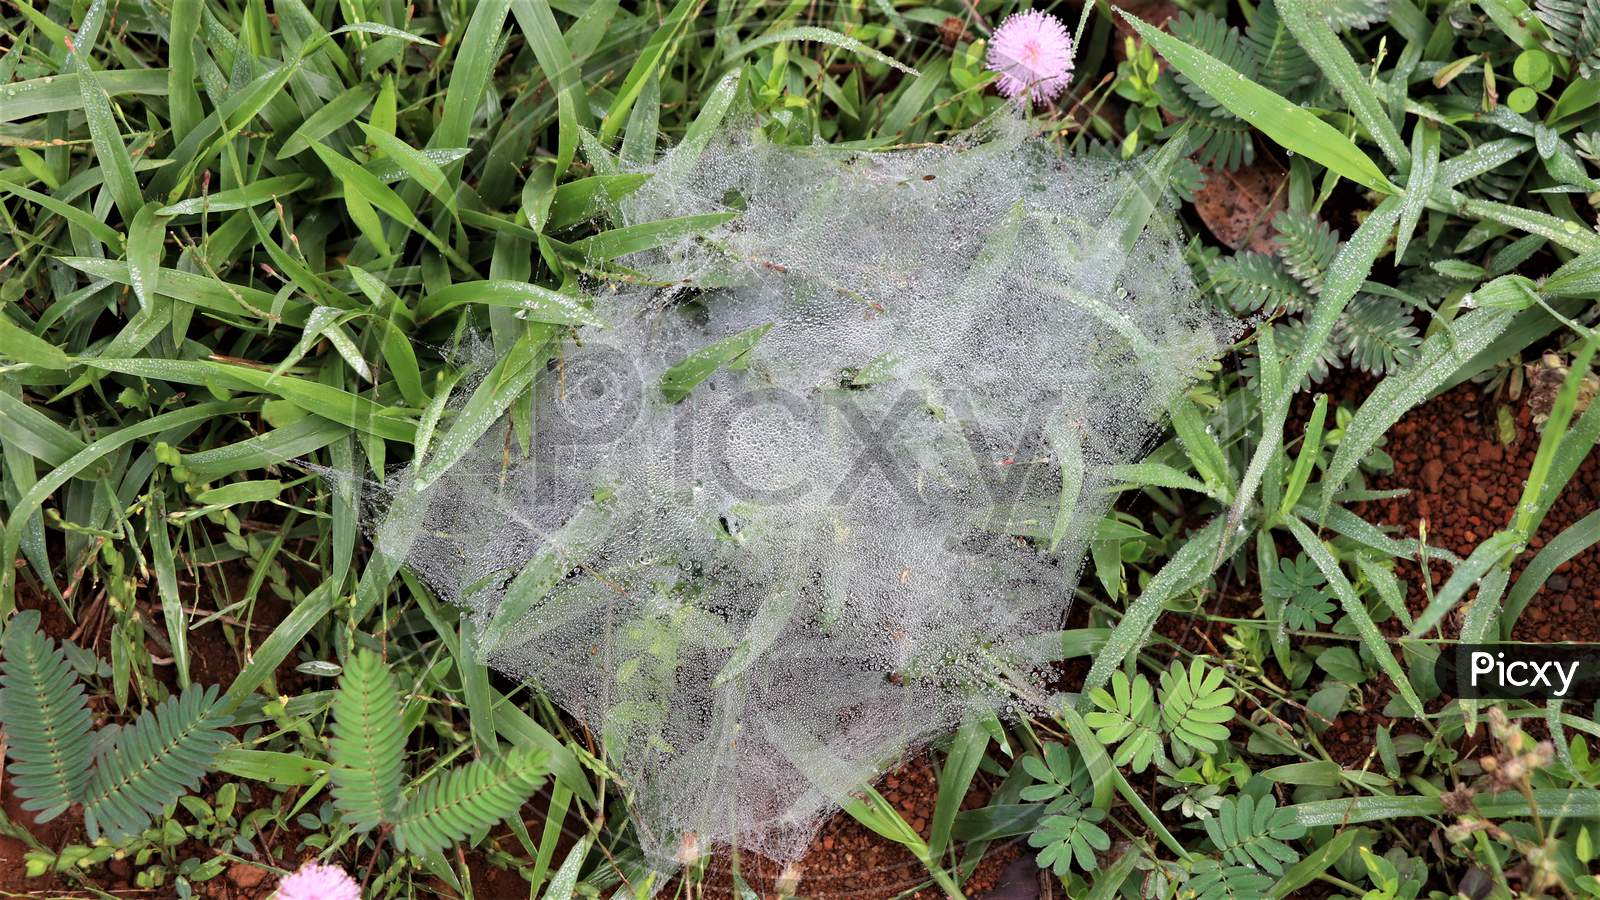 Spider web on grass in mist